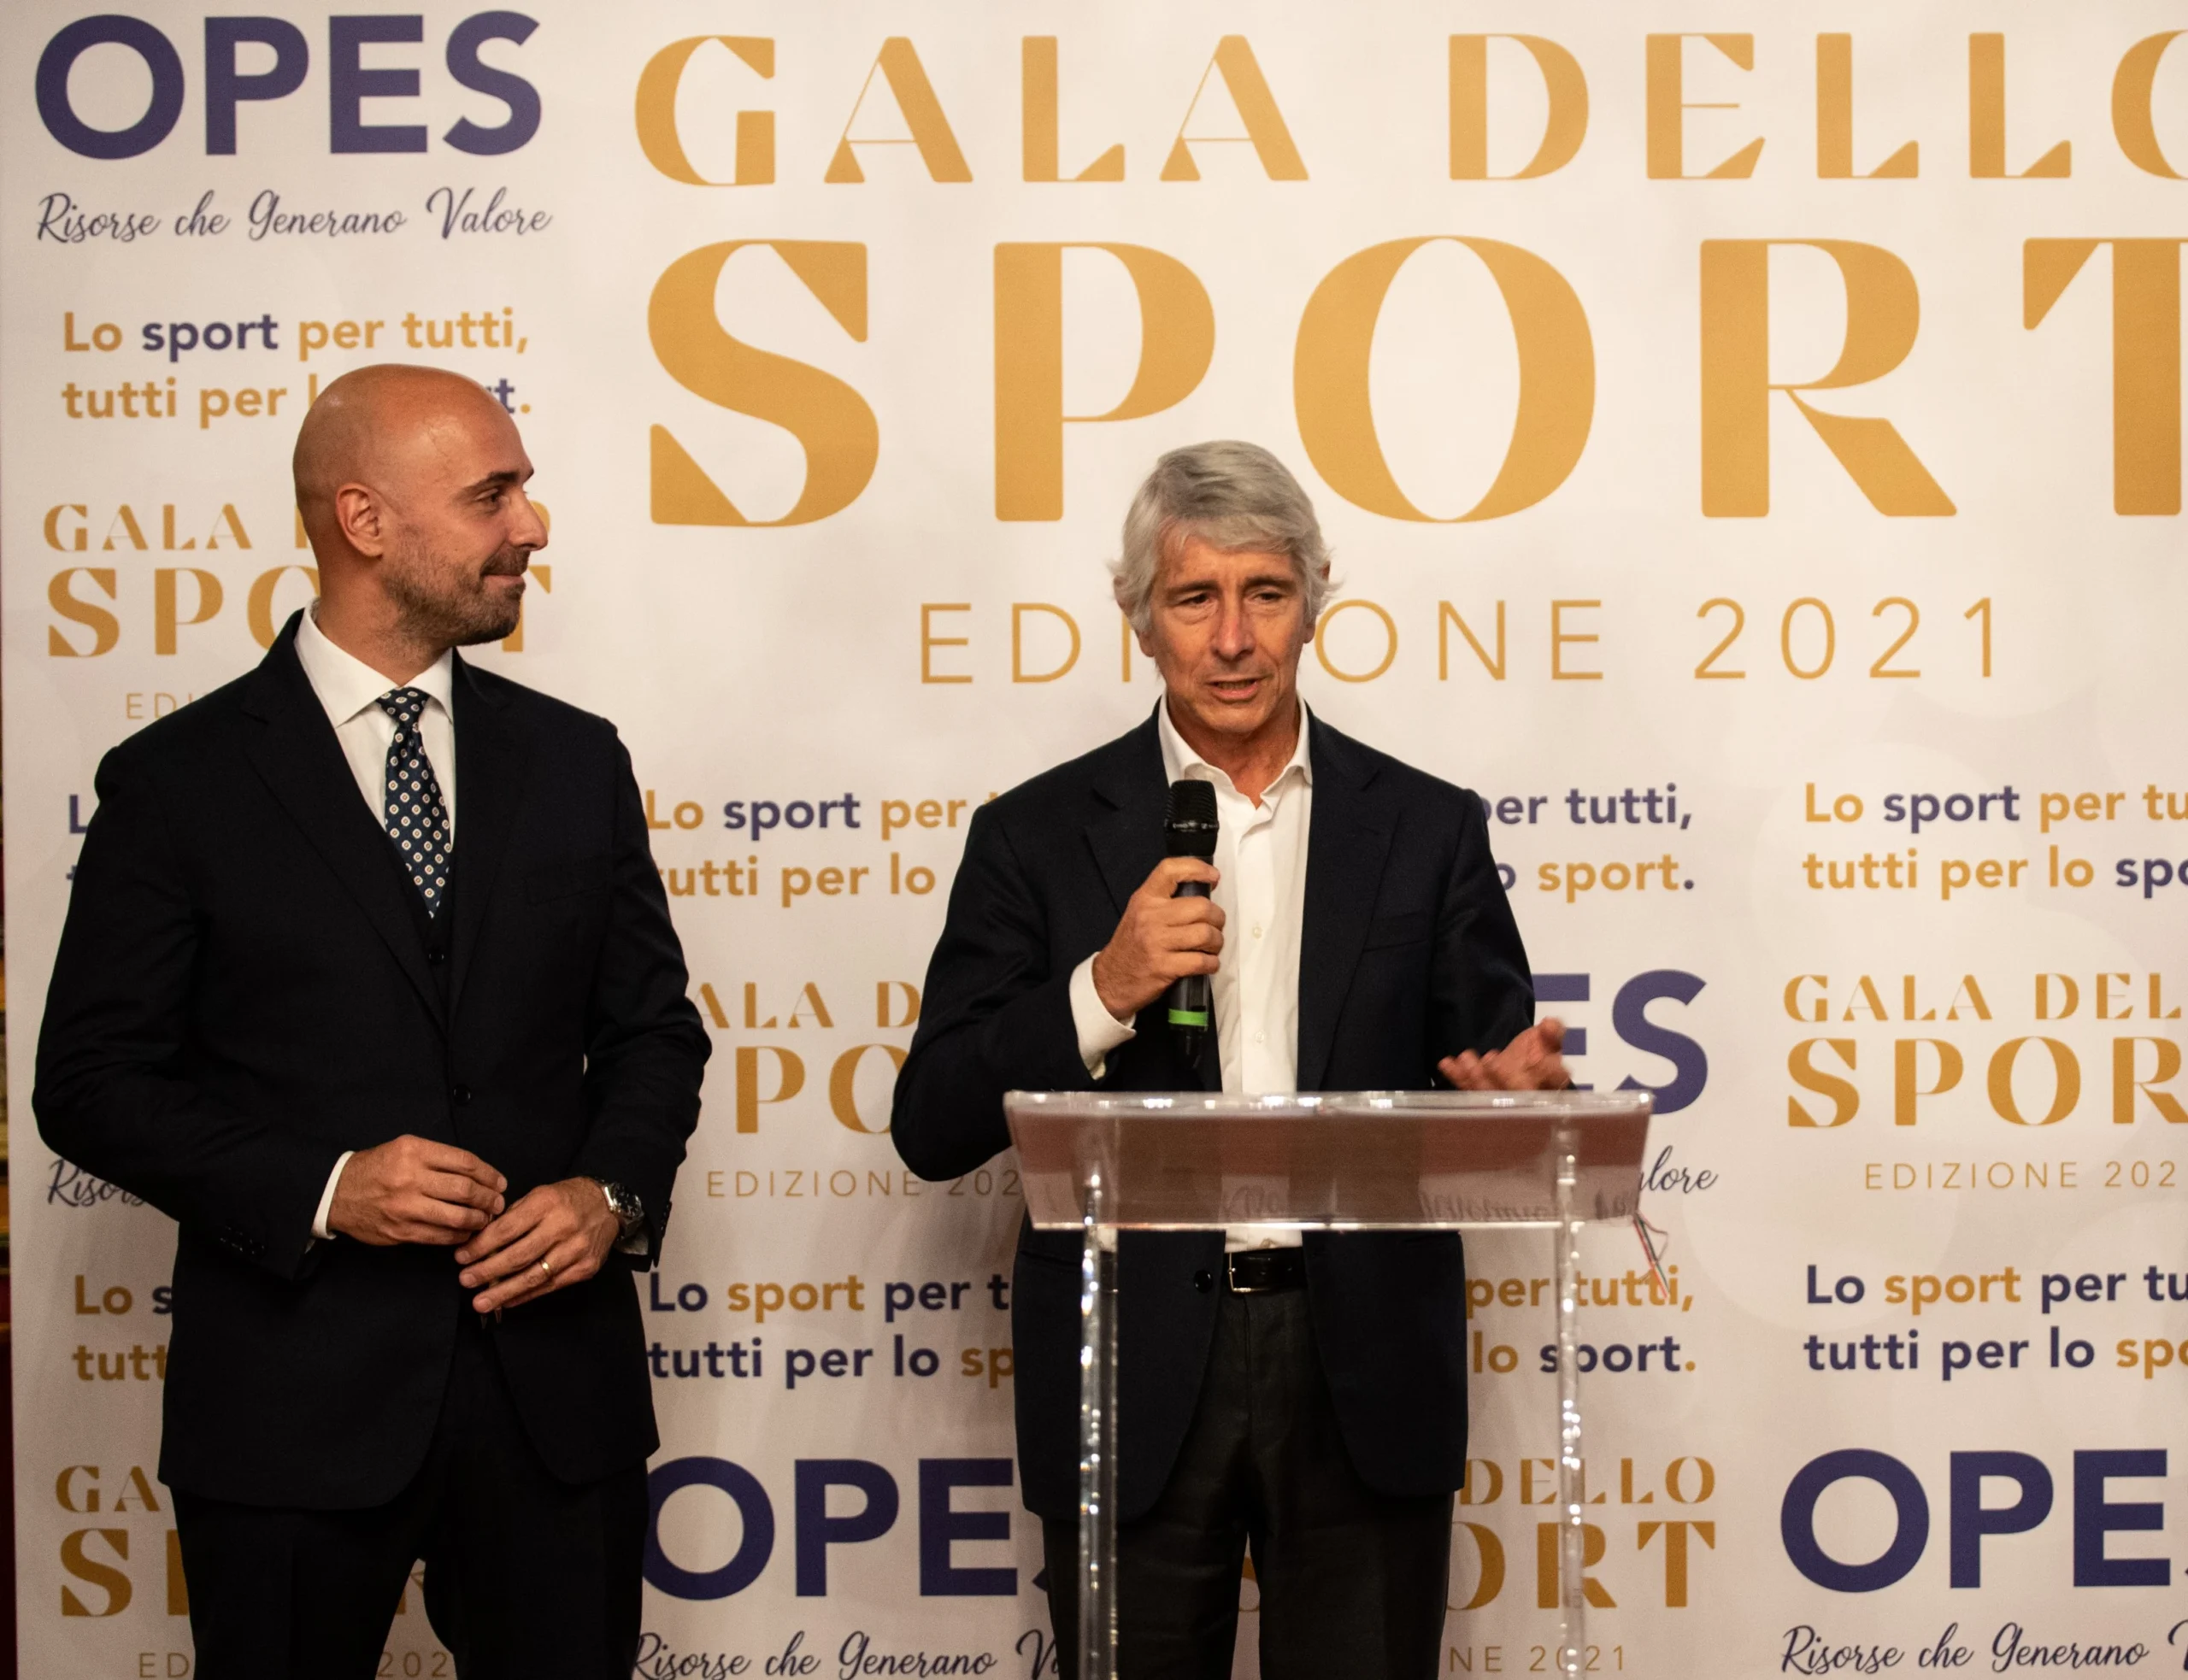 Opes_Gala_dello_Sport_2021